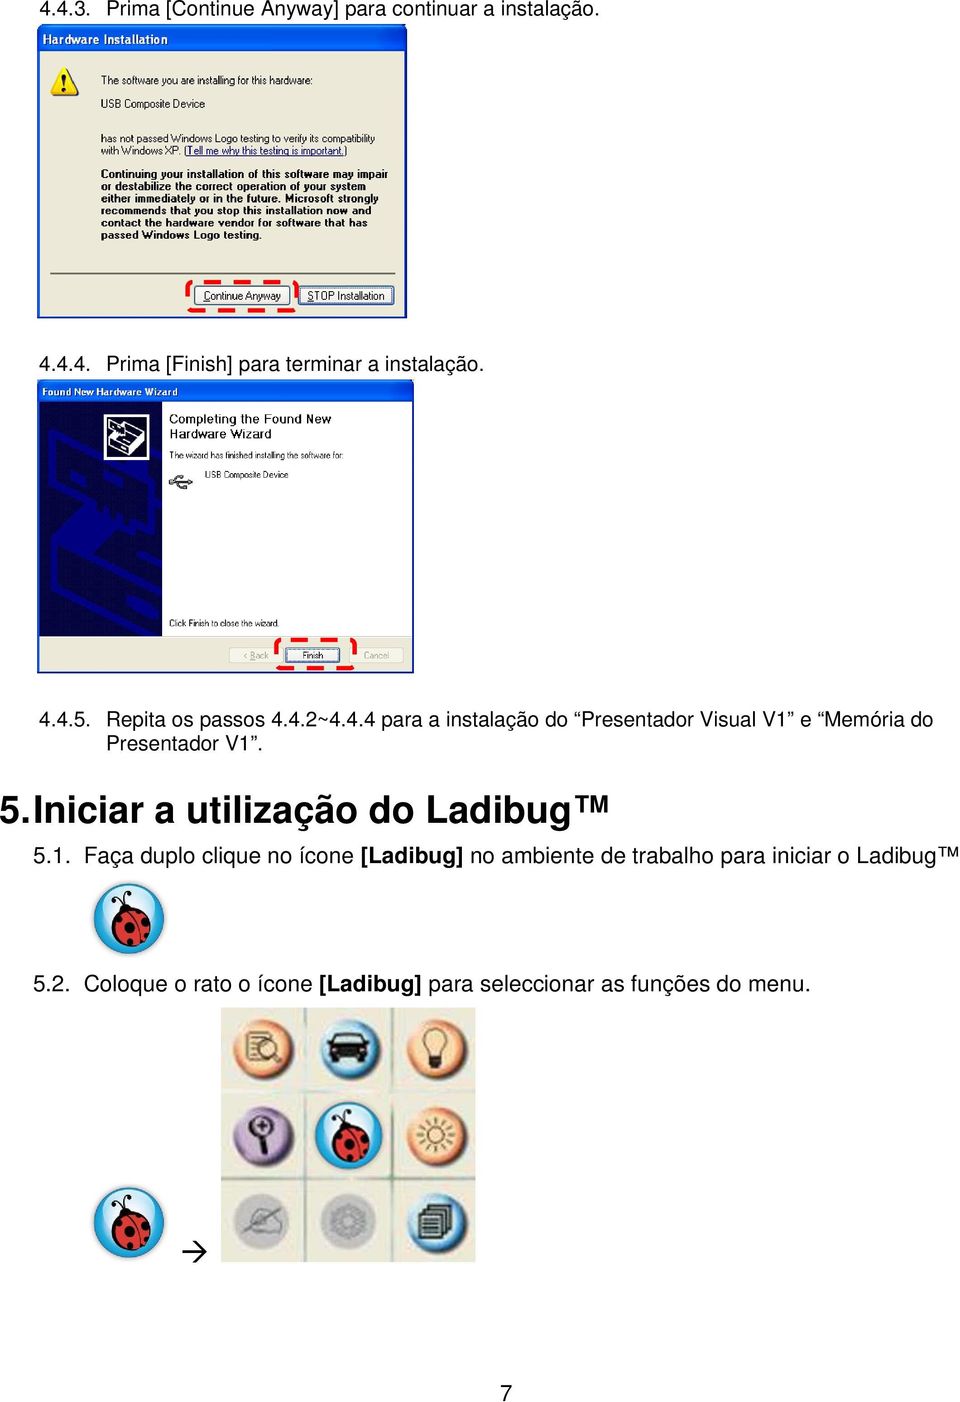 5. Iniciar a utilização do Ladibug 5.1.